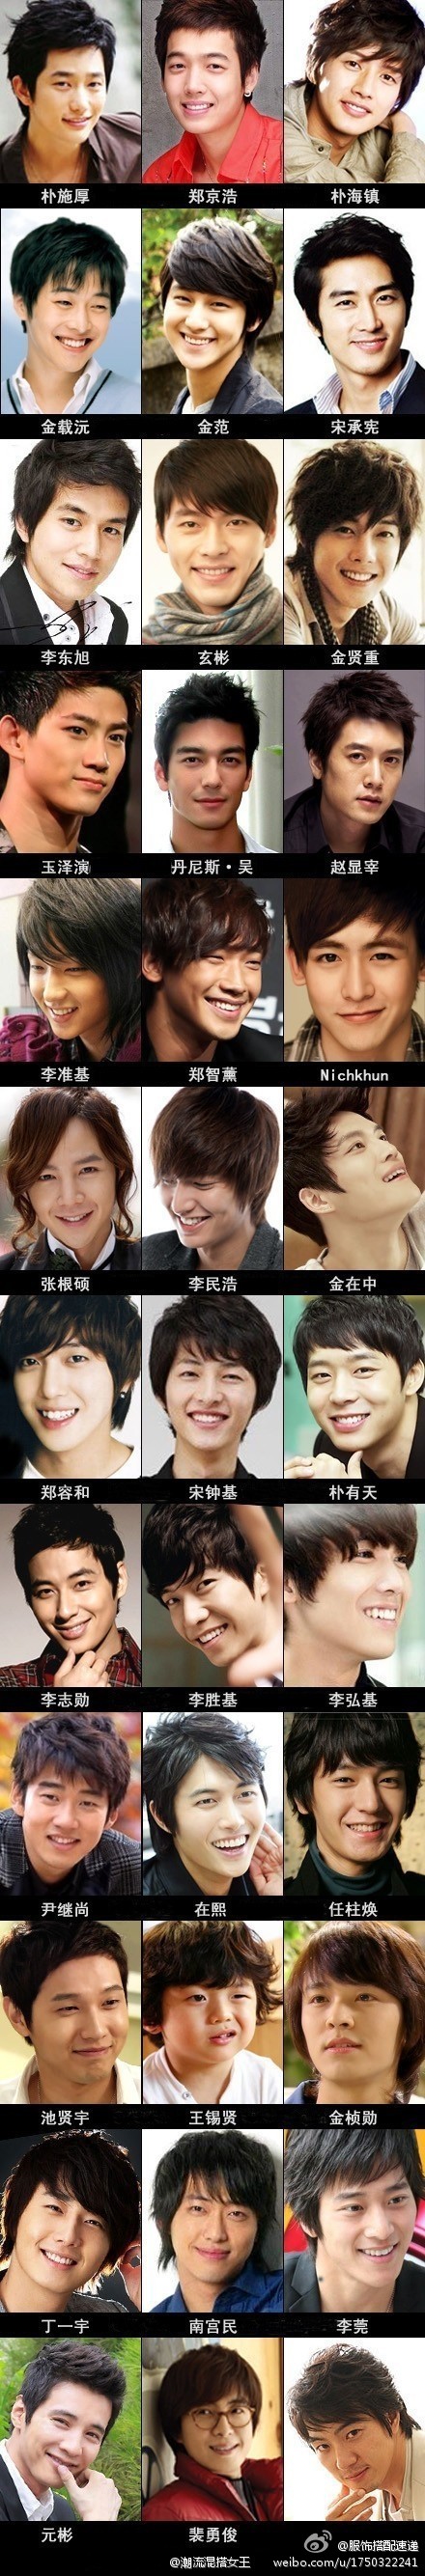 韩国搞笑明星男名单图片